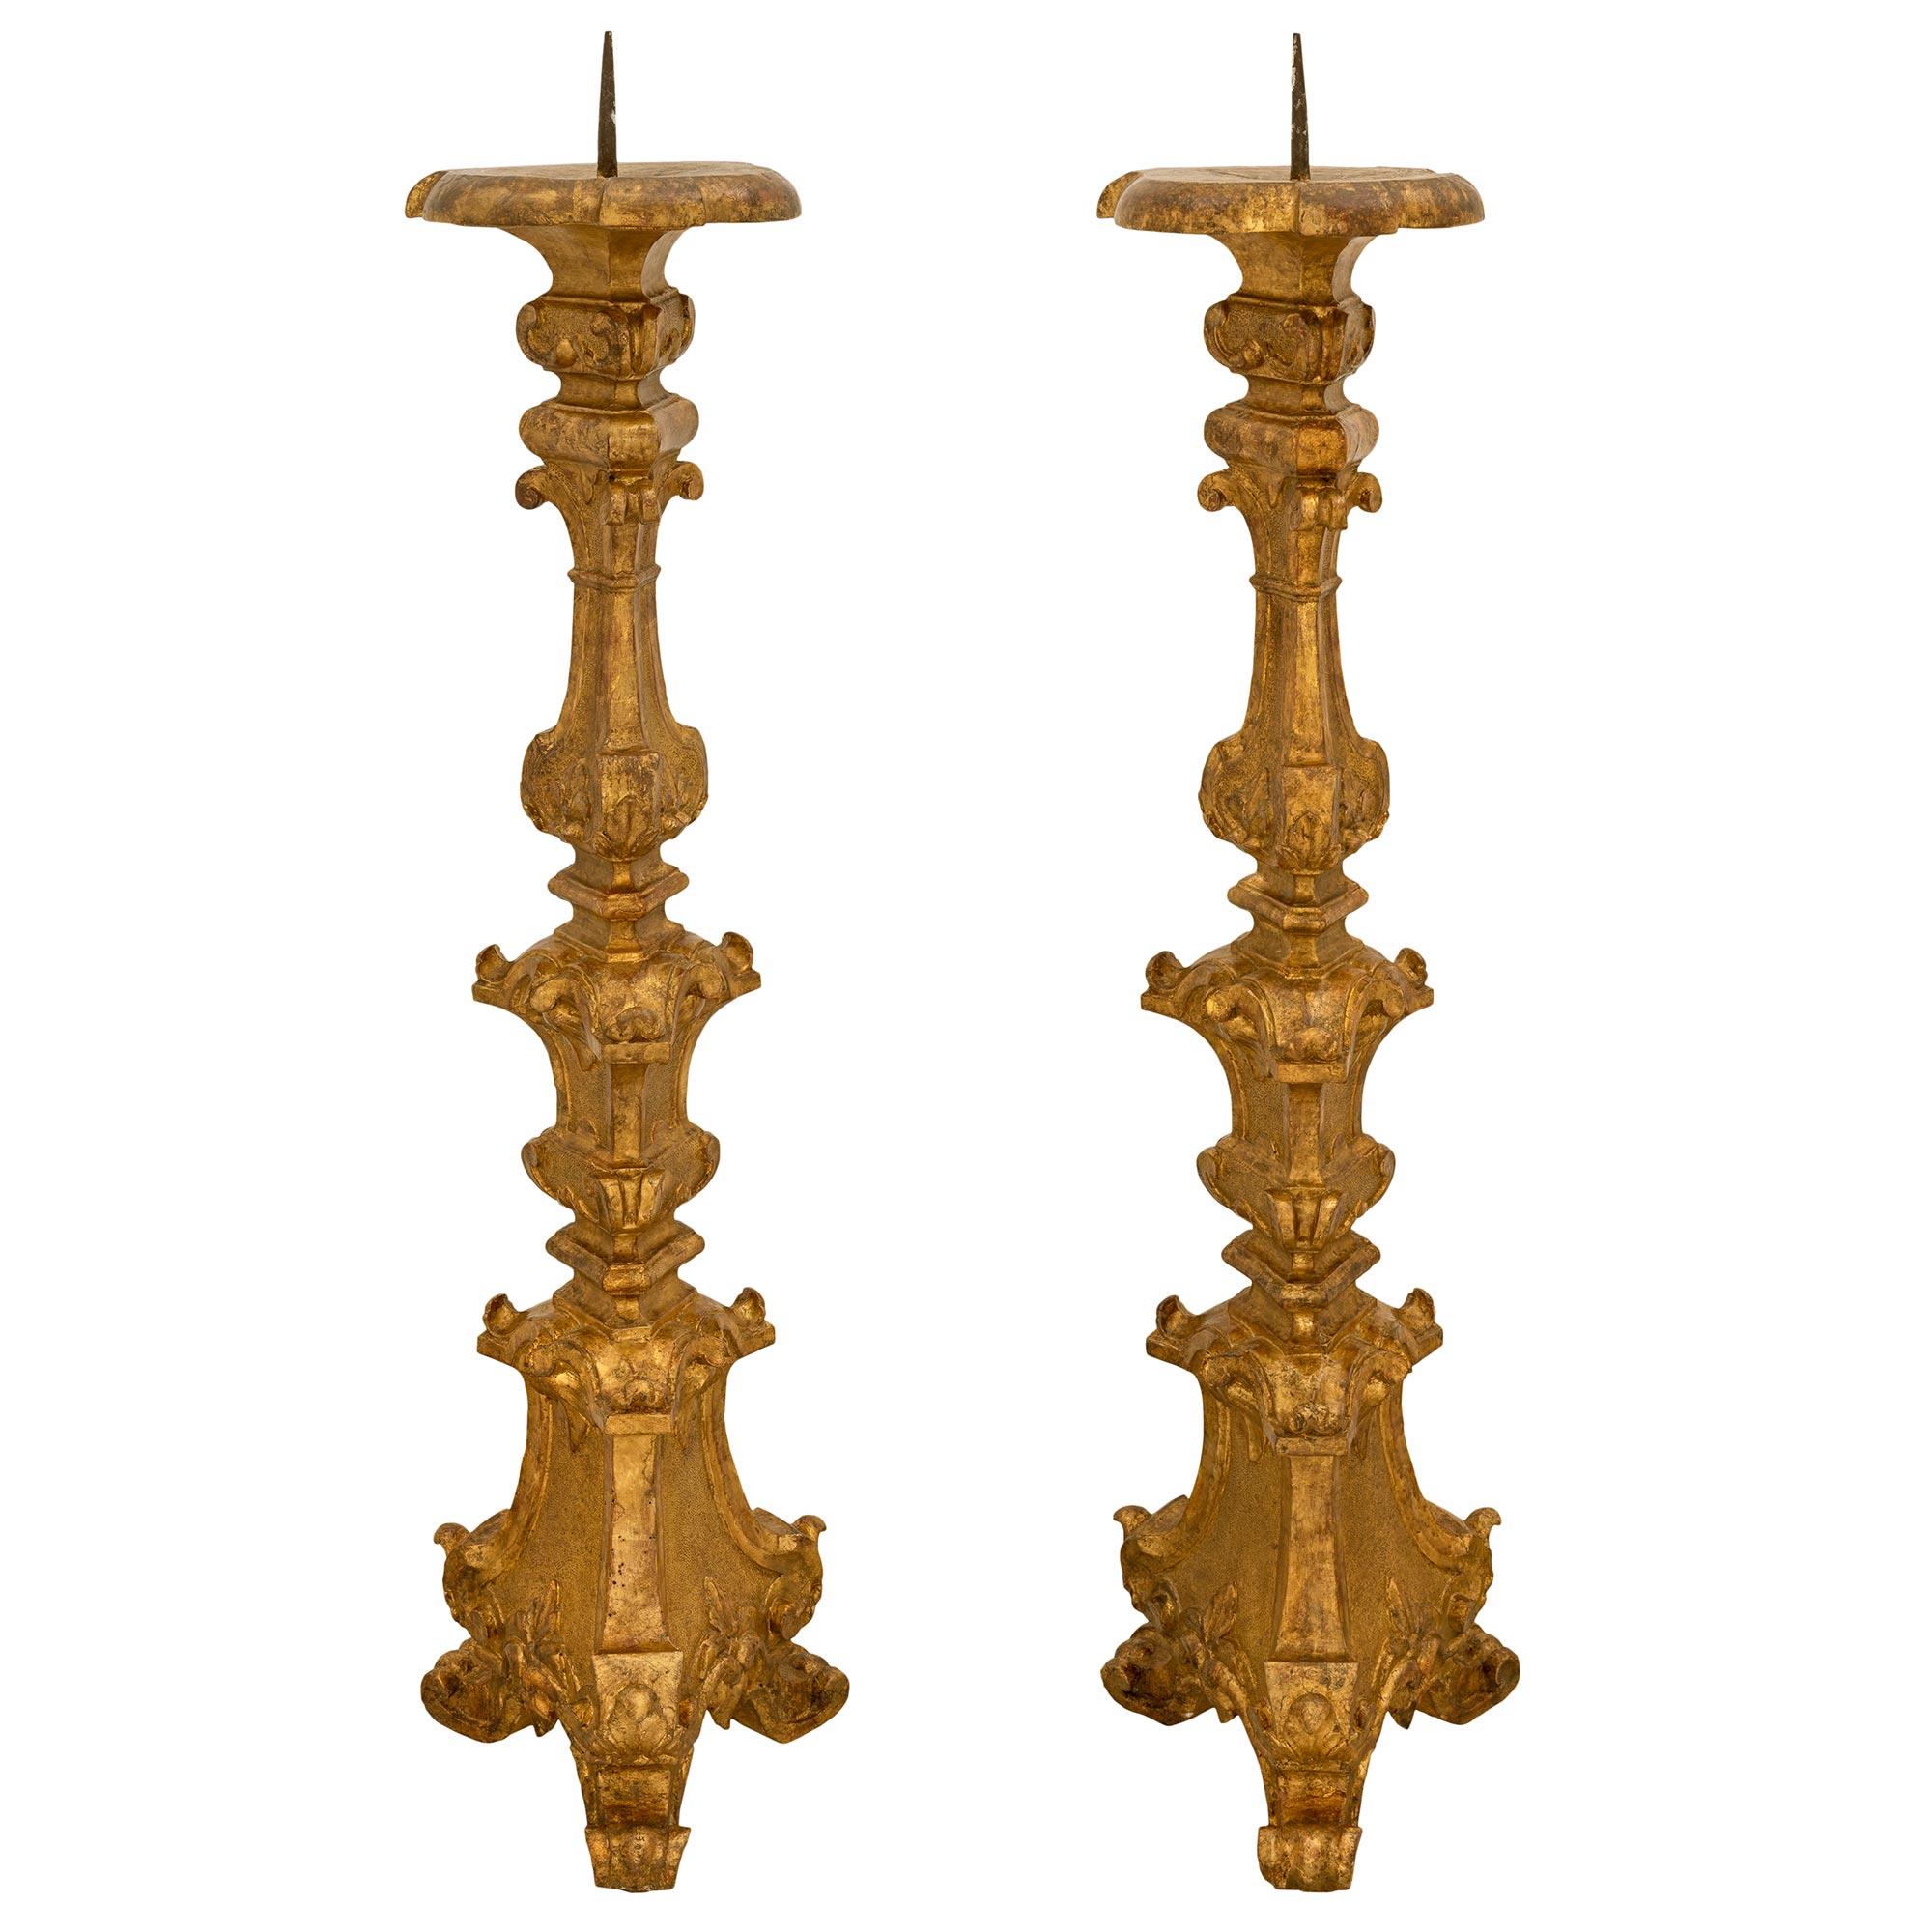 Remarquable paire de torchères Mecca italiennes du XVIIIe siècle, de style baroque. Chaque Torchière repose sur trois élégants pieds à volutes sous la base triangulaire légèrement incurvée, ornée de jolies sculptures de feuillage et d'un fin motif